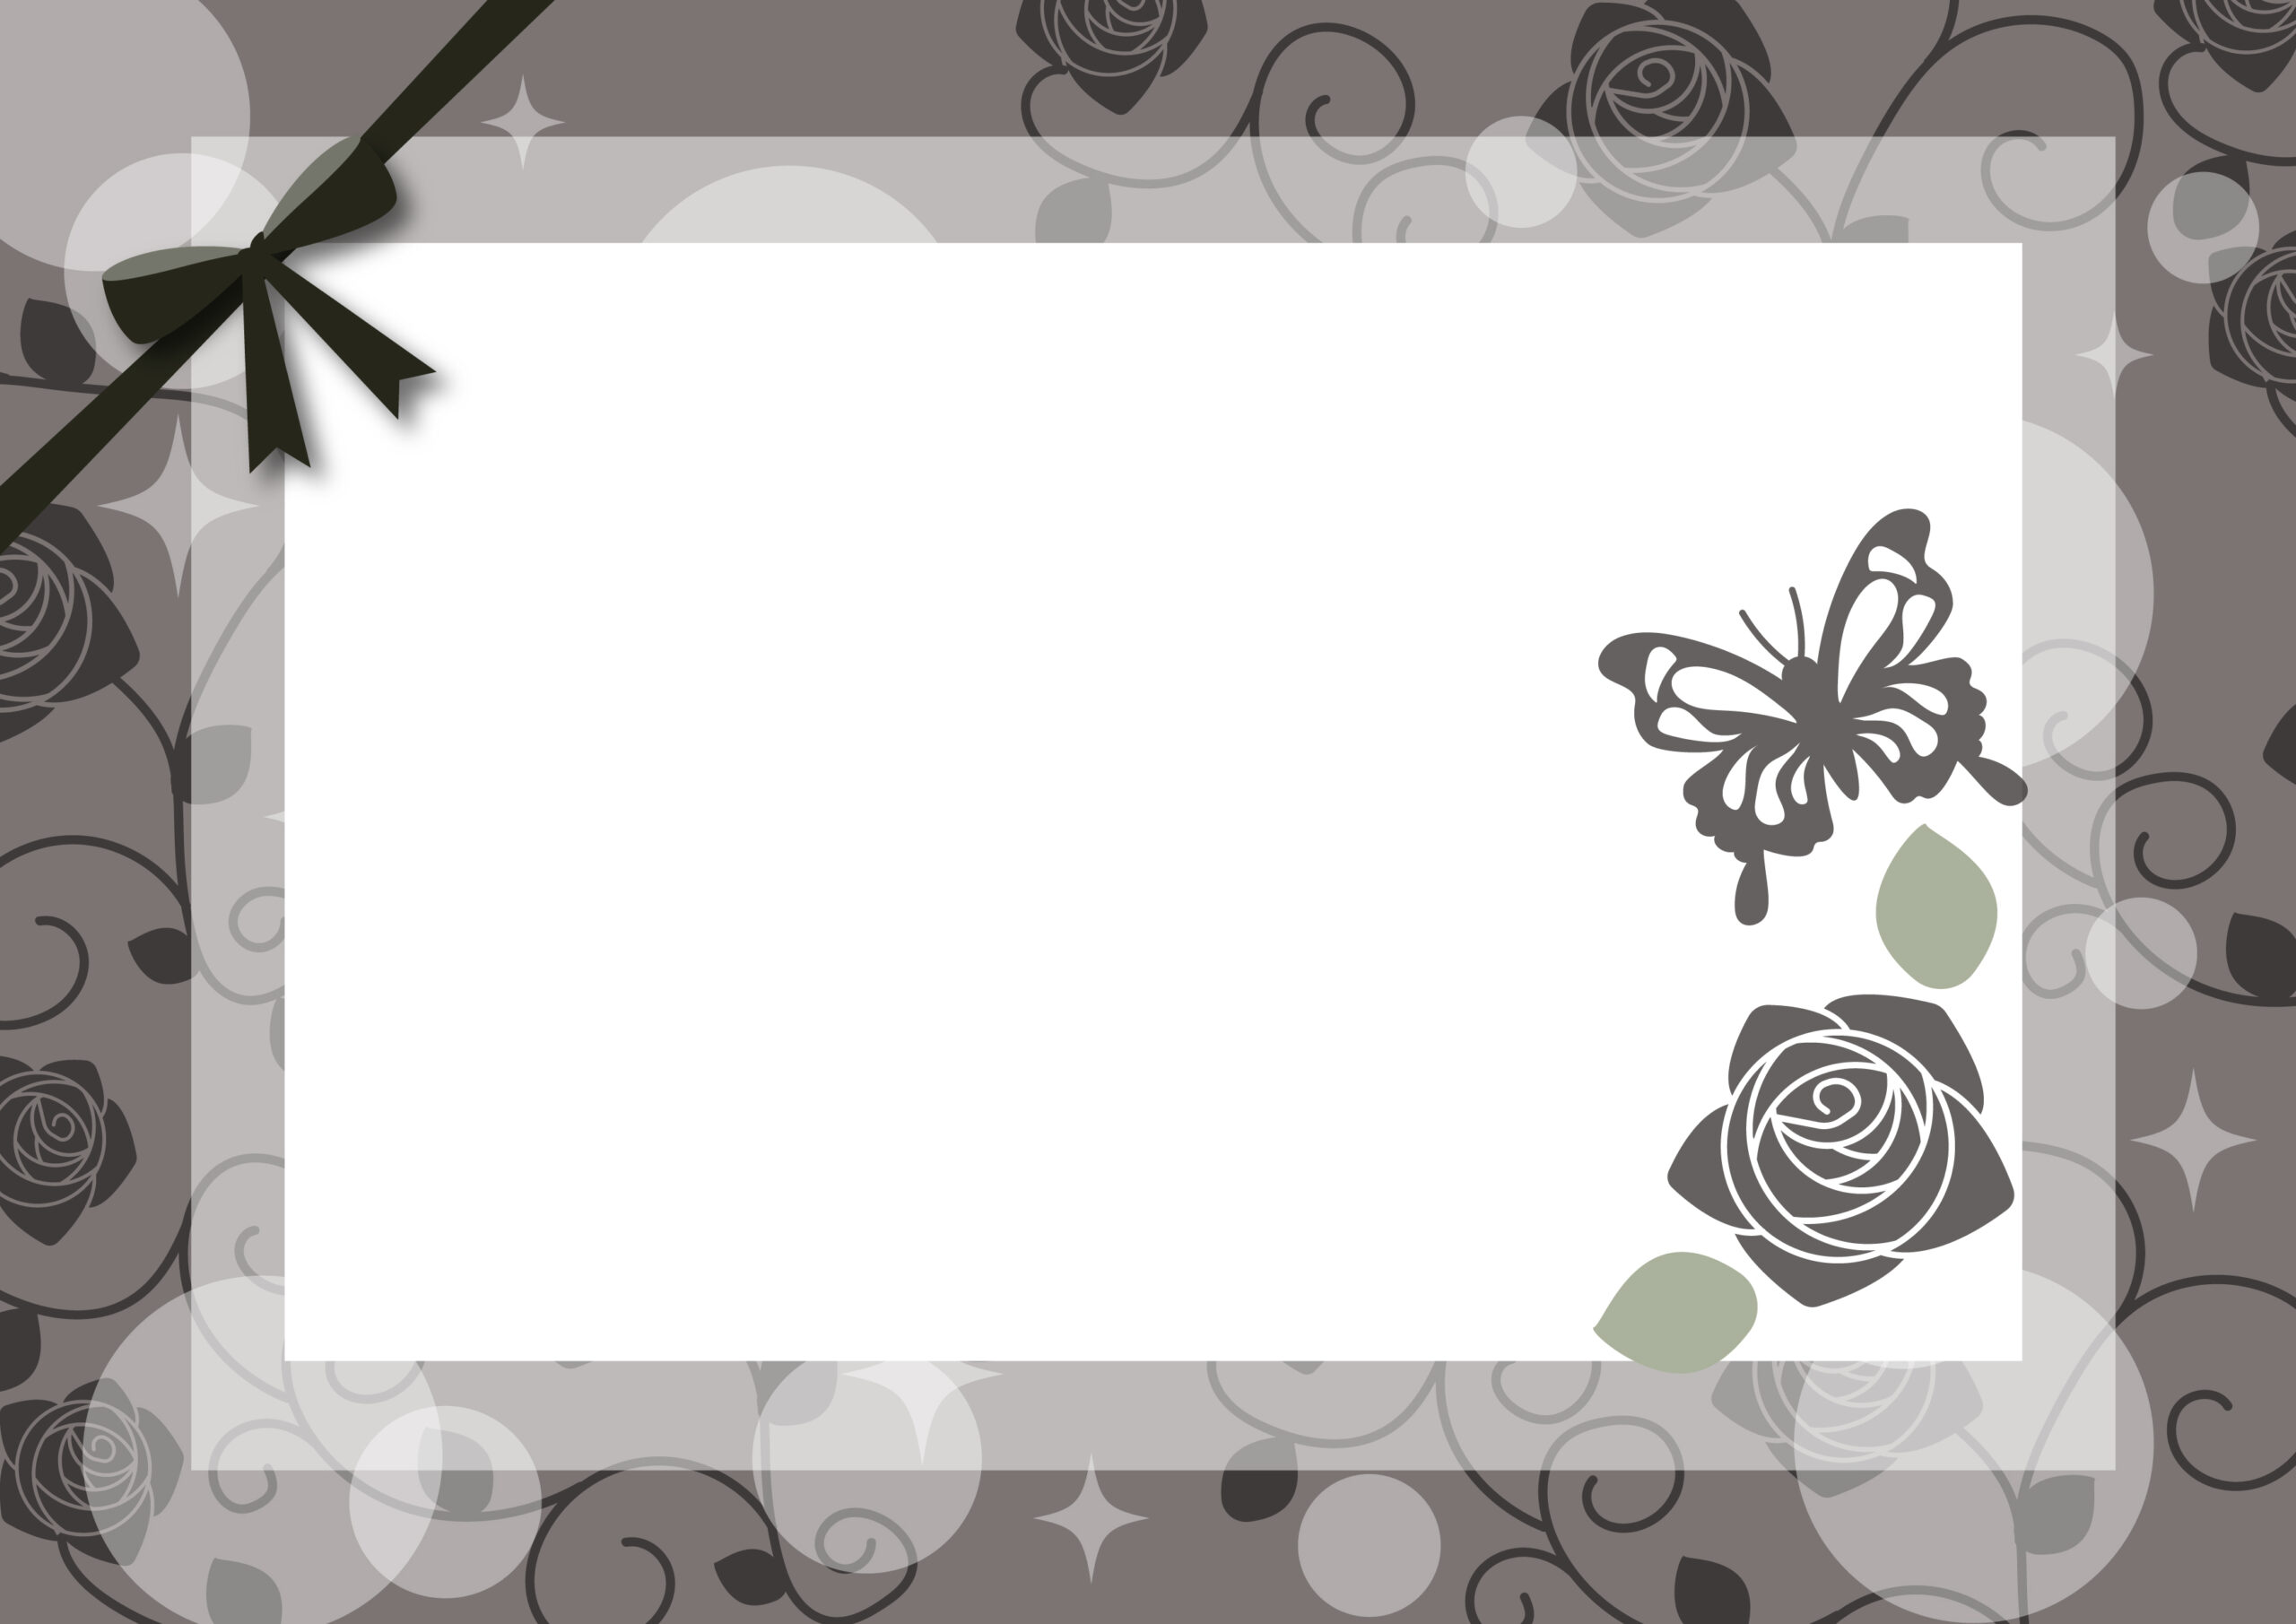 モノクロカラーのおしゃれなフレーム！蝶々とバラのデザイン、リボンのついた飾り枠の素材になります。誕生日カードやプレゼントに添えるメッセージカードにいかがでしょうか。白黒印刷でもかわいいのでおすすめします。ダウンロード：JPGA4